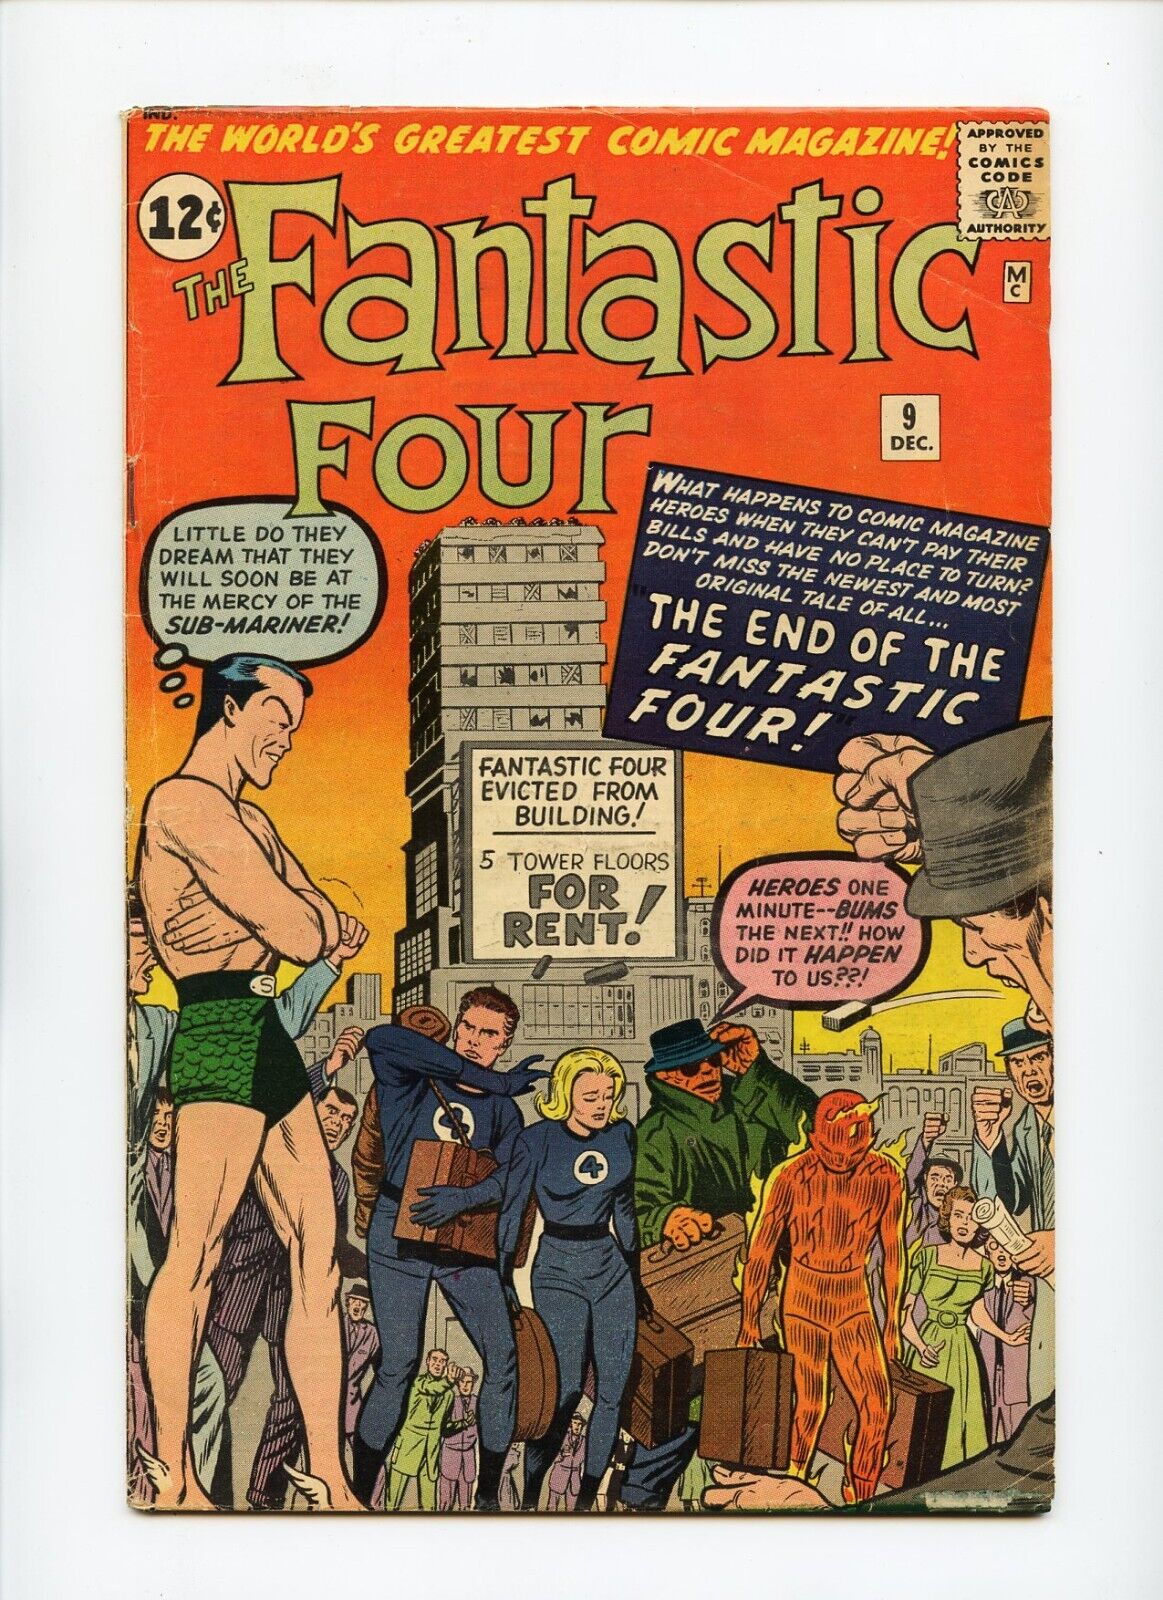 Fantastic Four #9 Marvel Comics